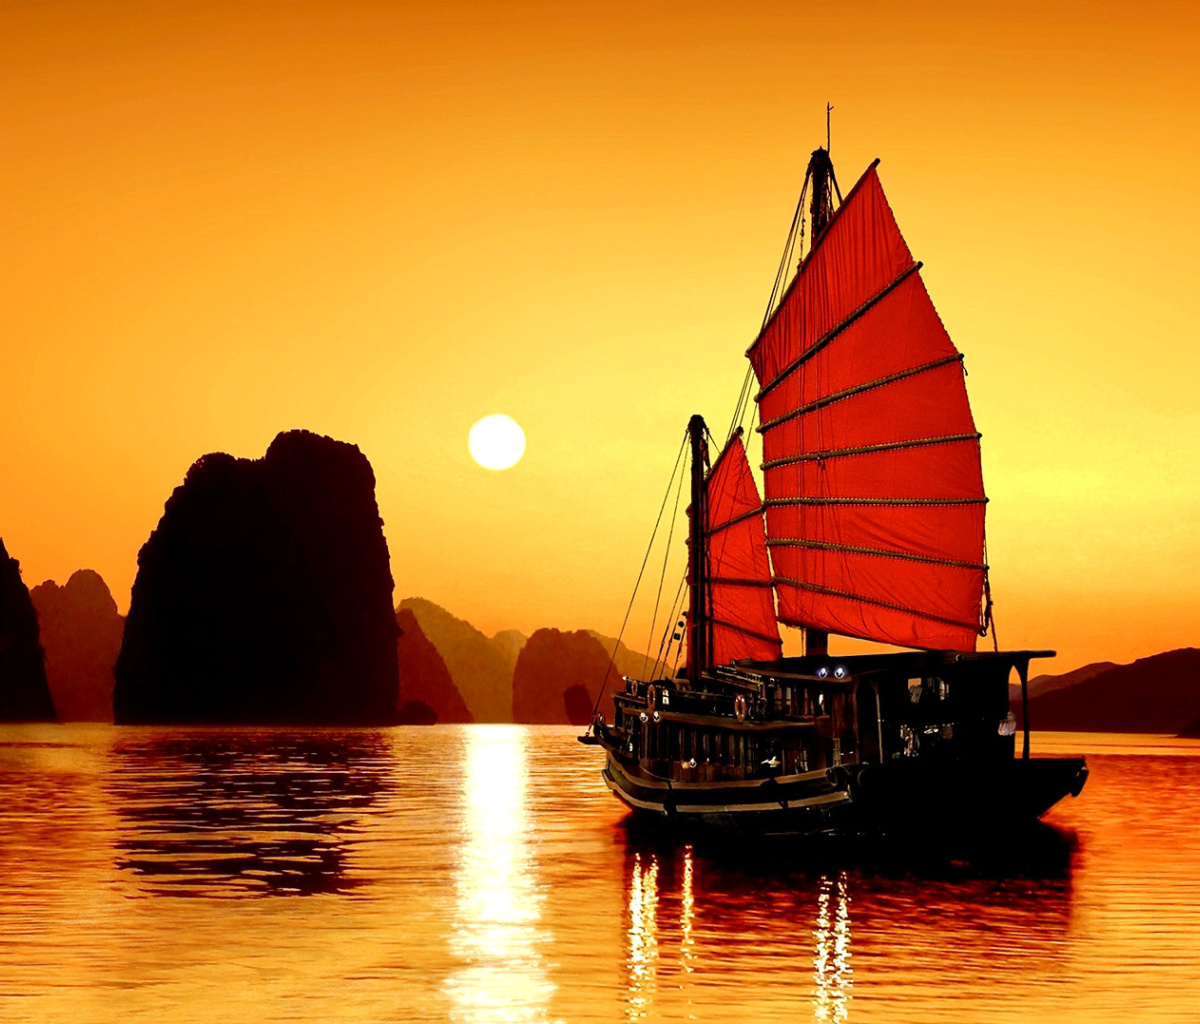 Halong Bay, Vietnama in Sunset screenshot #1 1200x1024